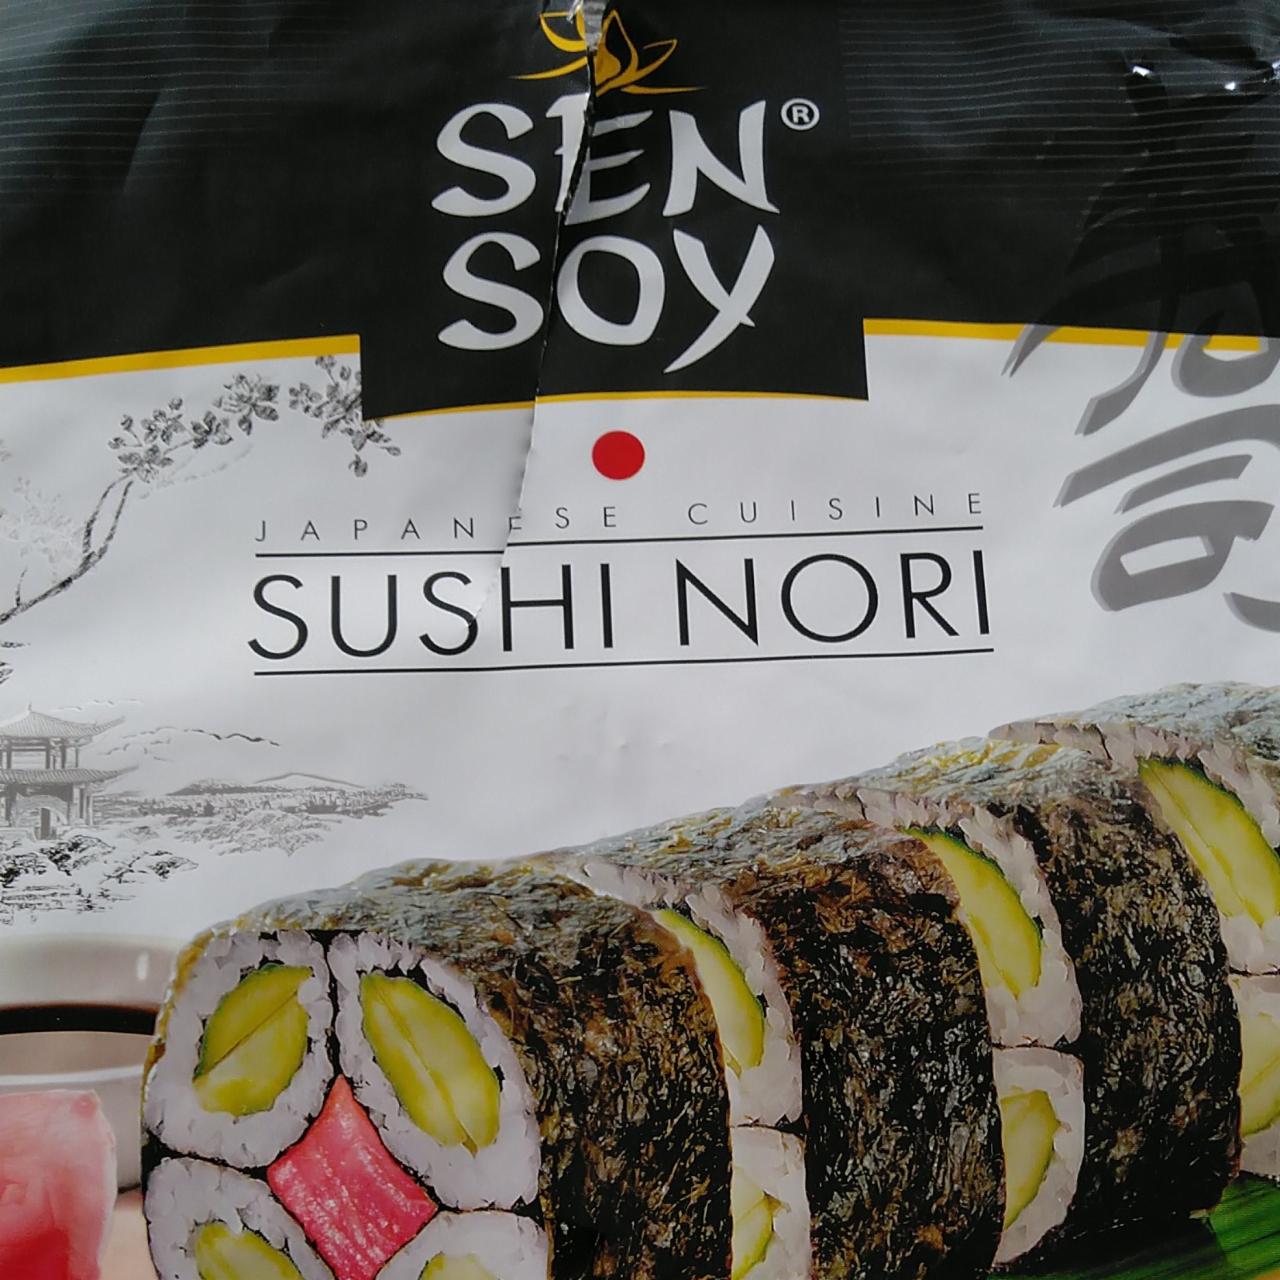 Fotografie - sushi nori Japanese cuisine Sen Soy